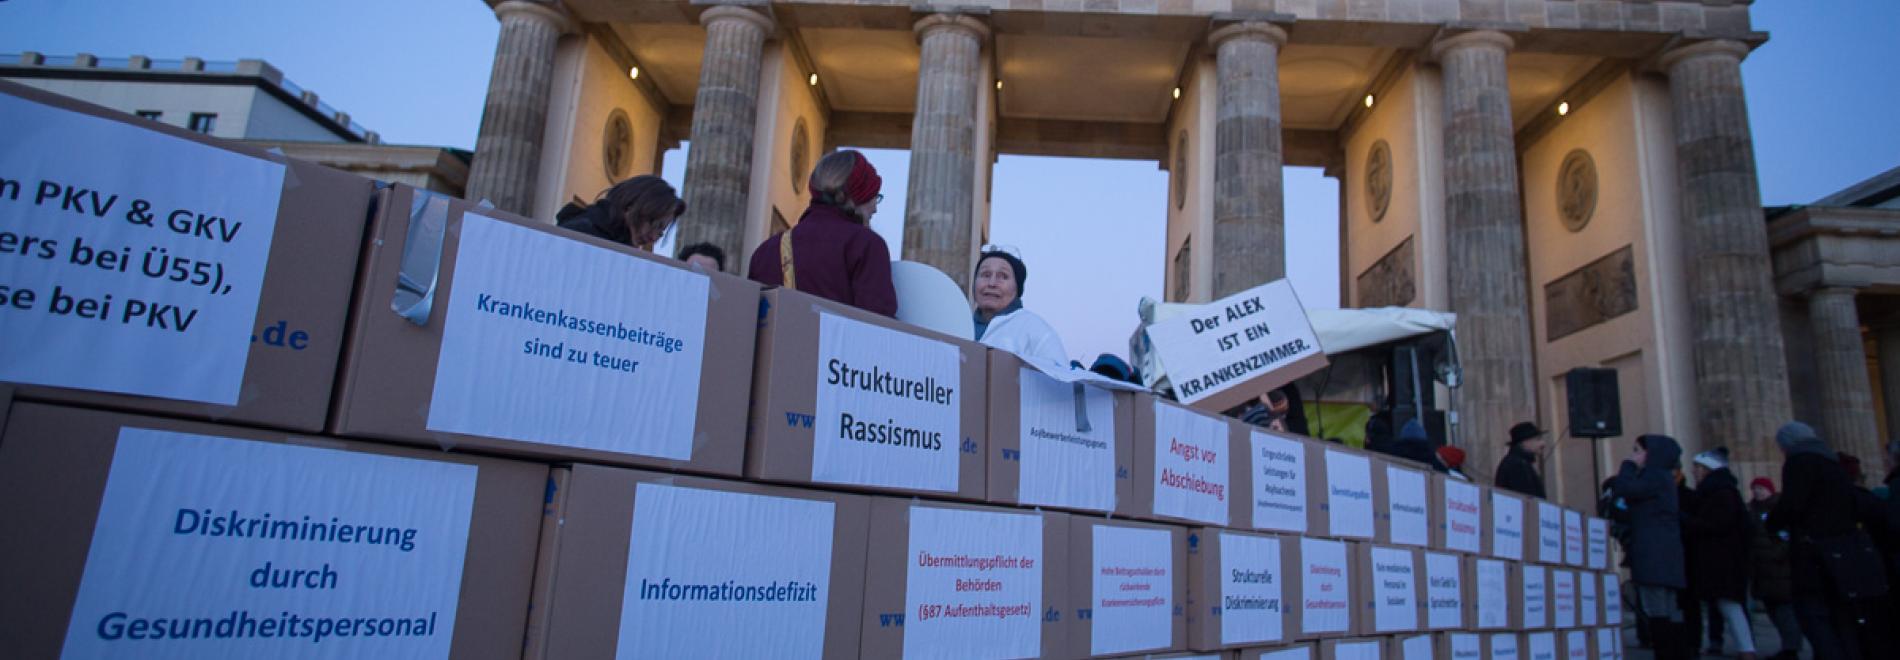 Demonstration für Gesundheitsversorgung in Deutschland. Foto: Walter Wetzler